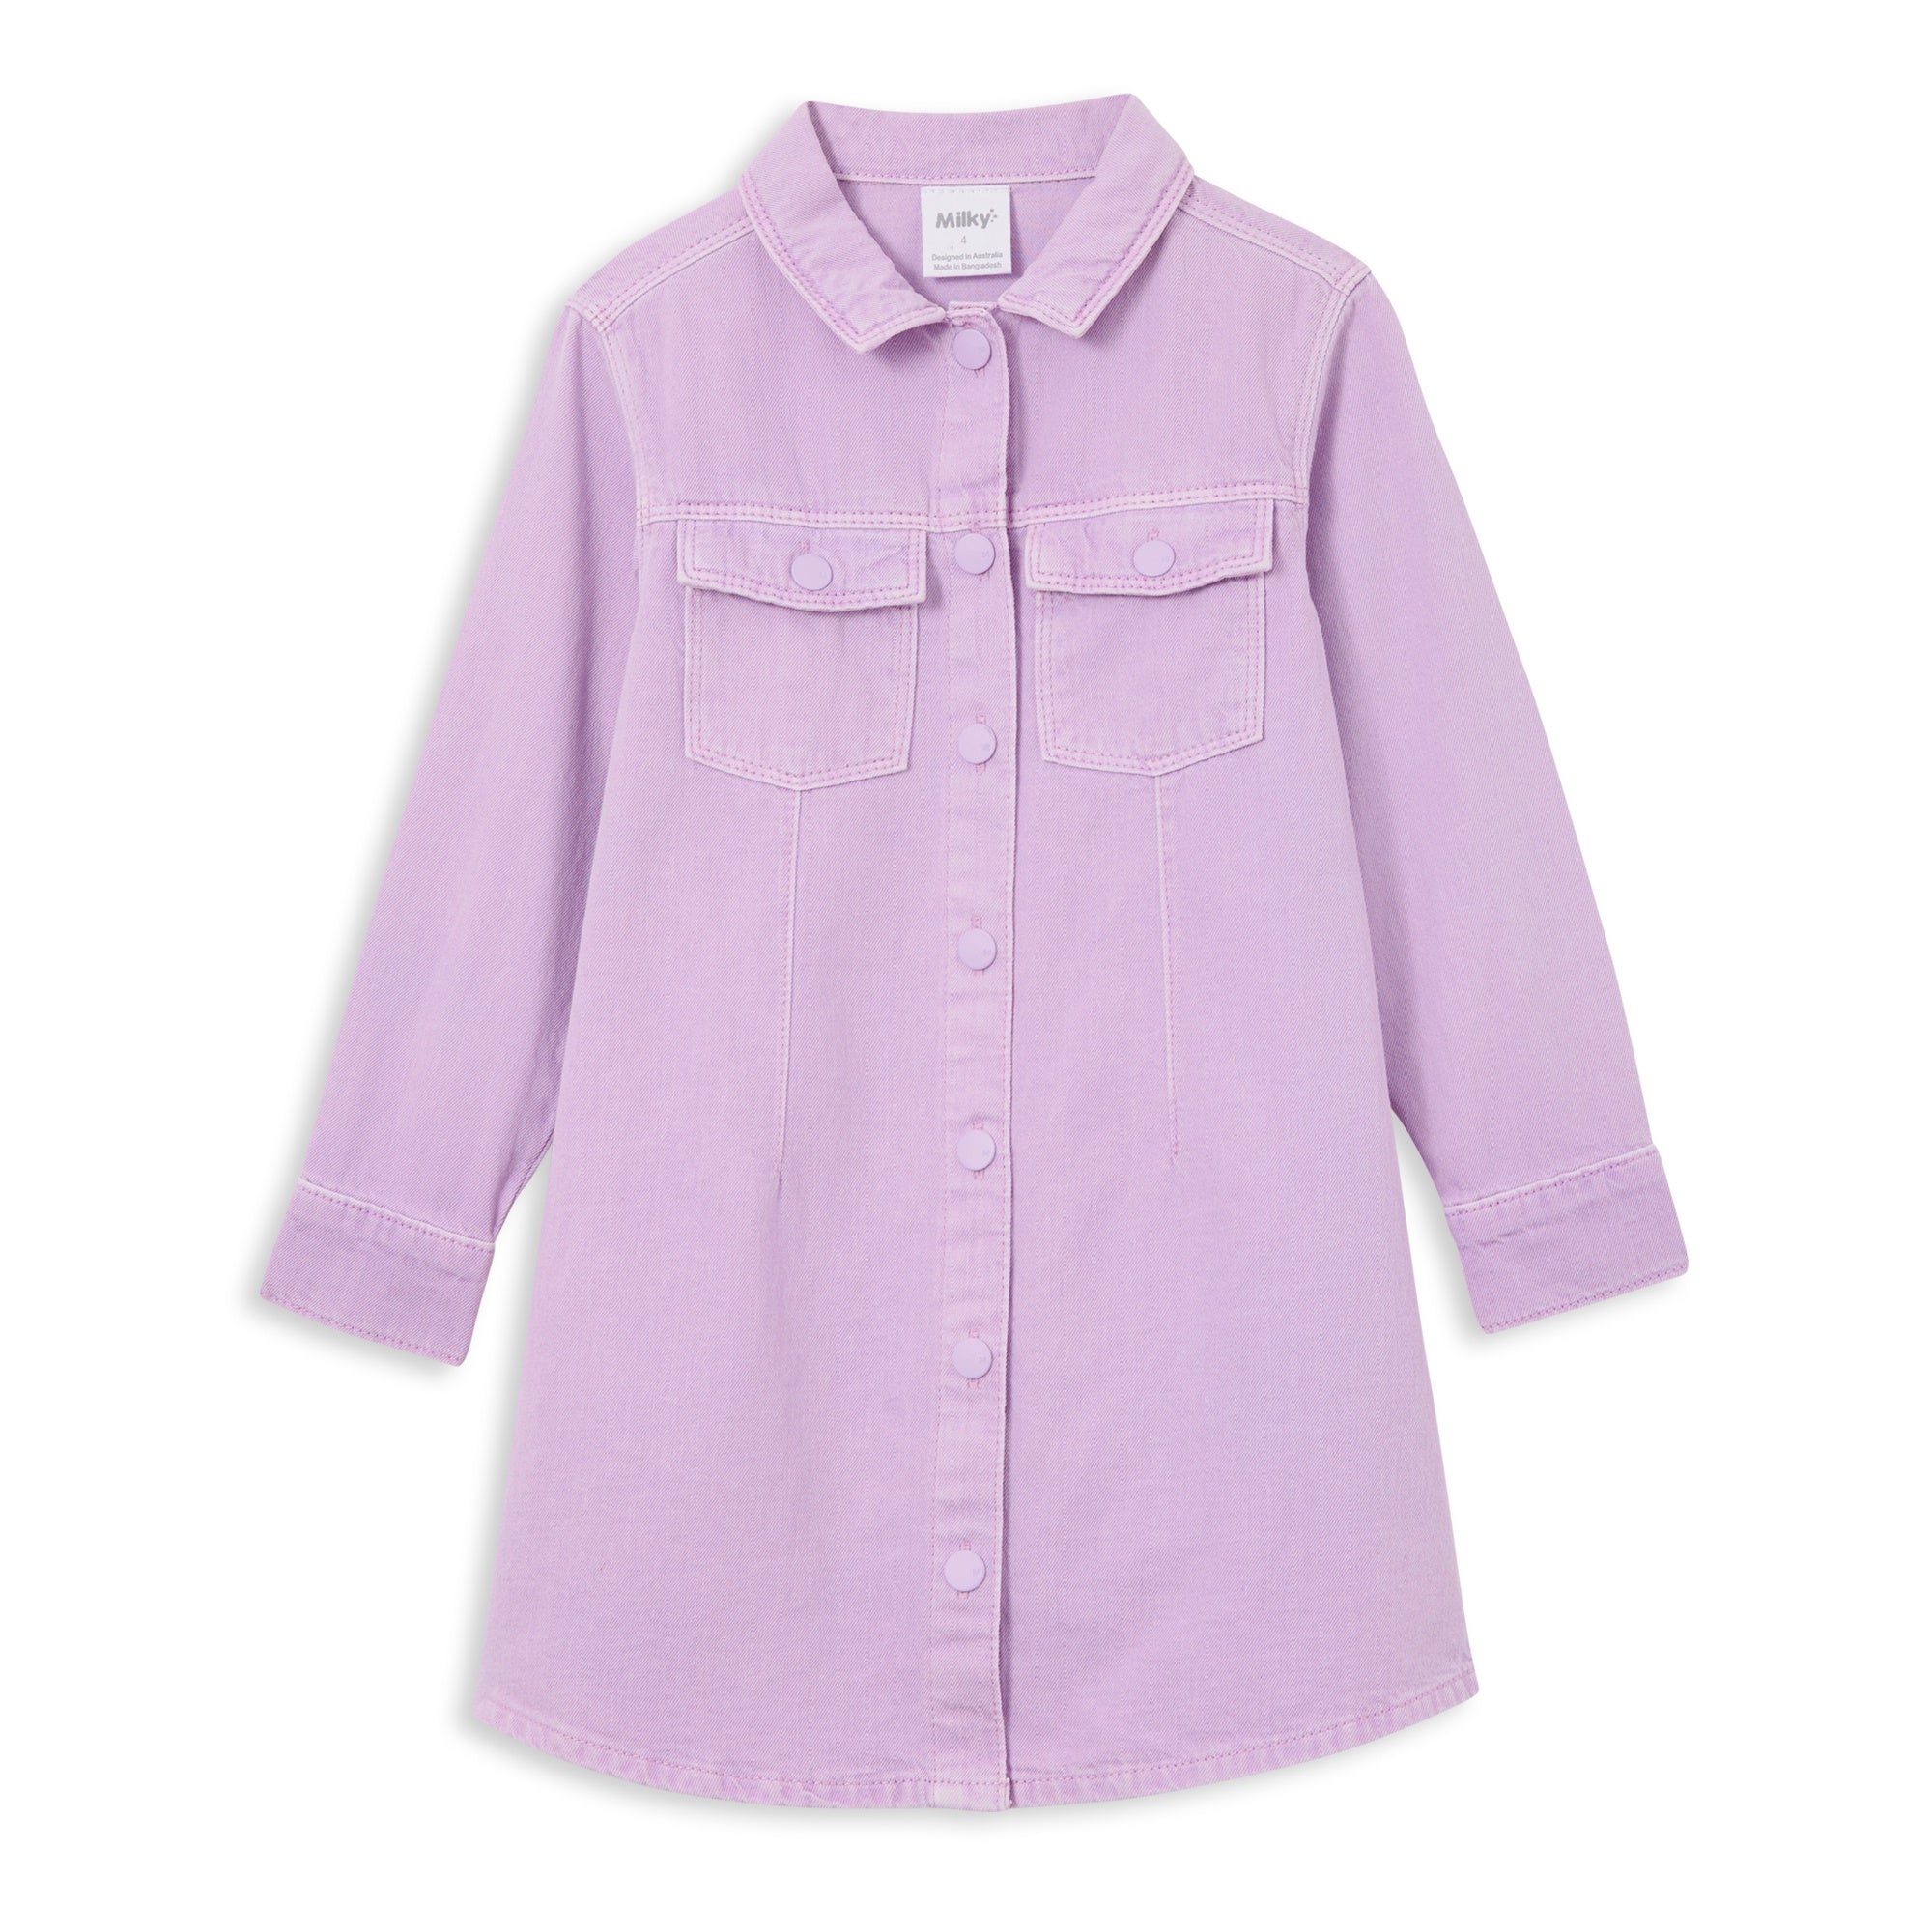 Discover more than 119 lilac denim dress super hot